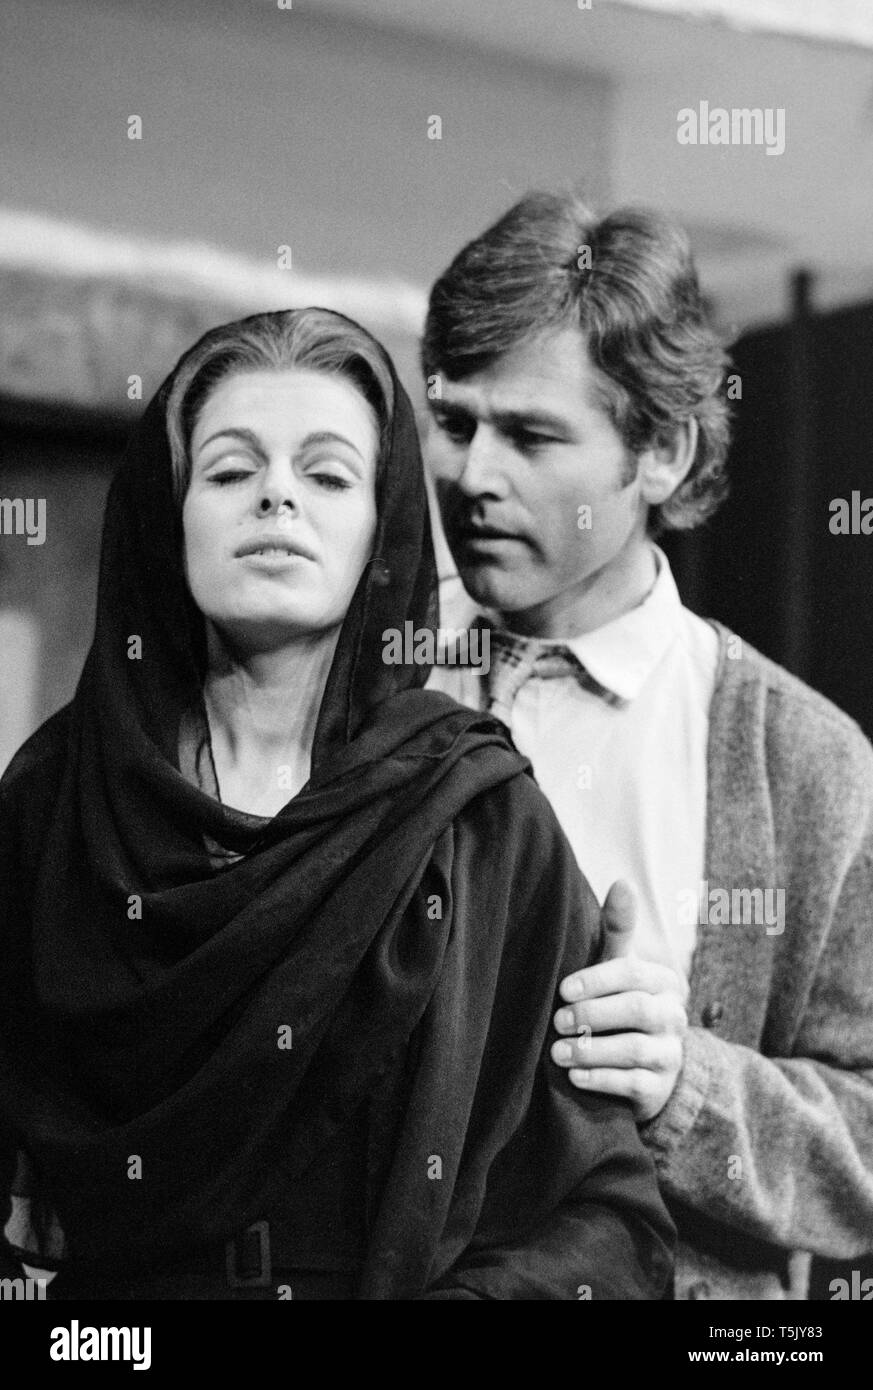 Schottische Schauspieler Jim Smilie, und englische Schauspielerin Angela Richards, auf der Bühne während der Proben für die play Zorba des Greenwich Theatre, London, im November 1973. Smilie gespielt von Nikos, und Richards war in der Rolle als die Witwe. Stockfoto